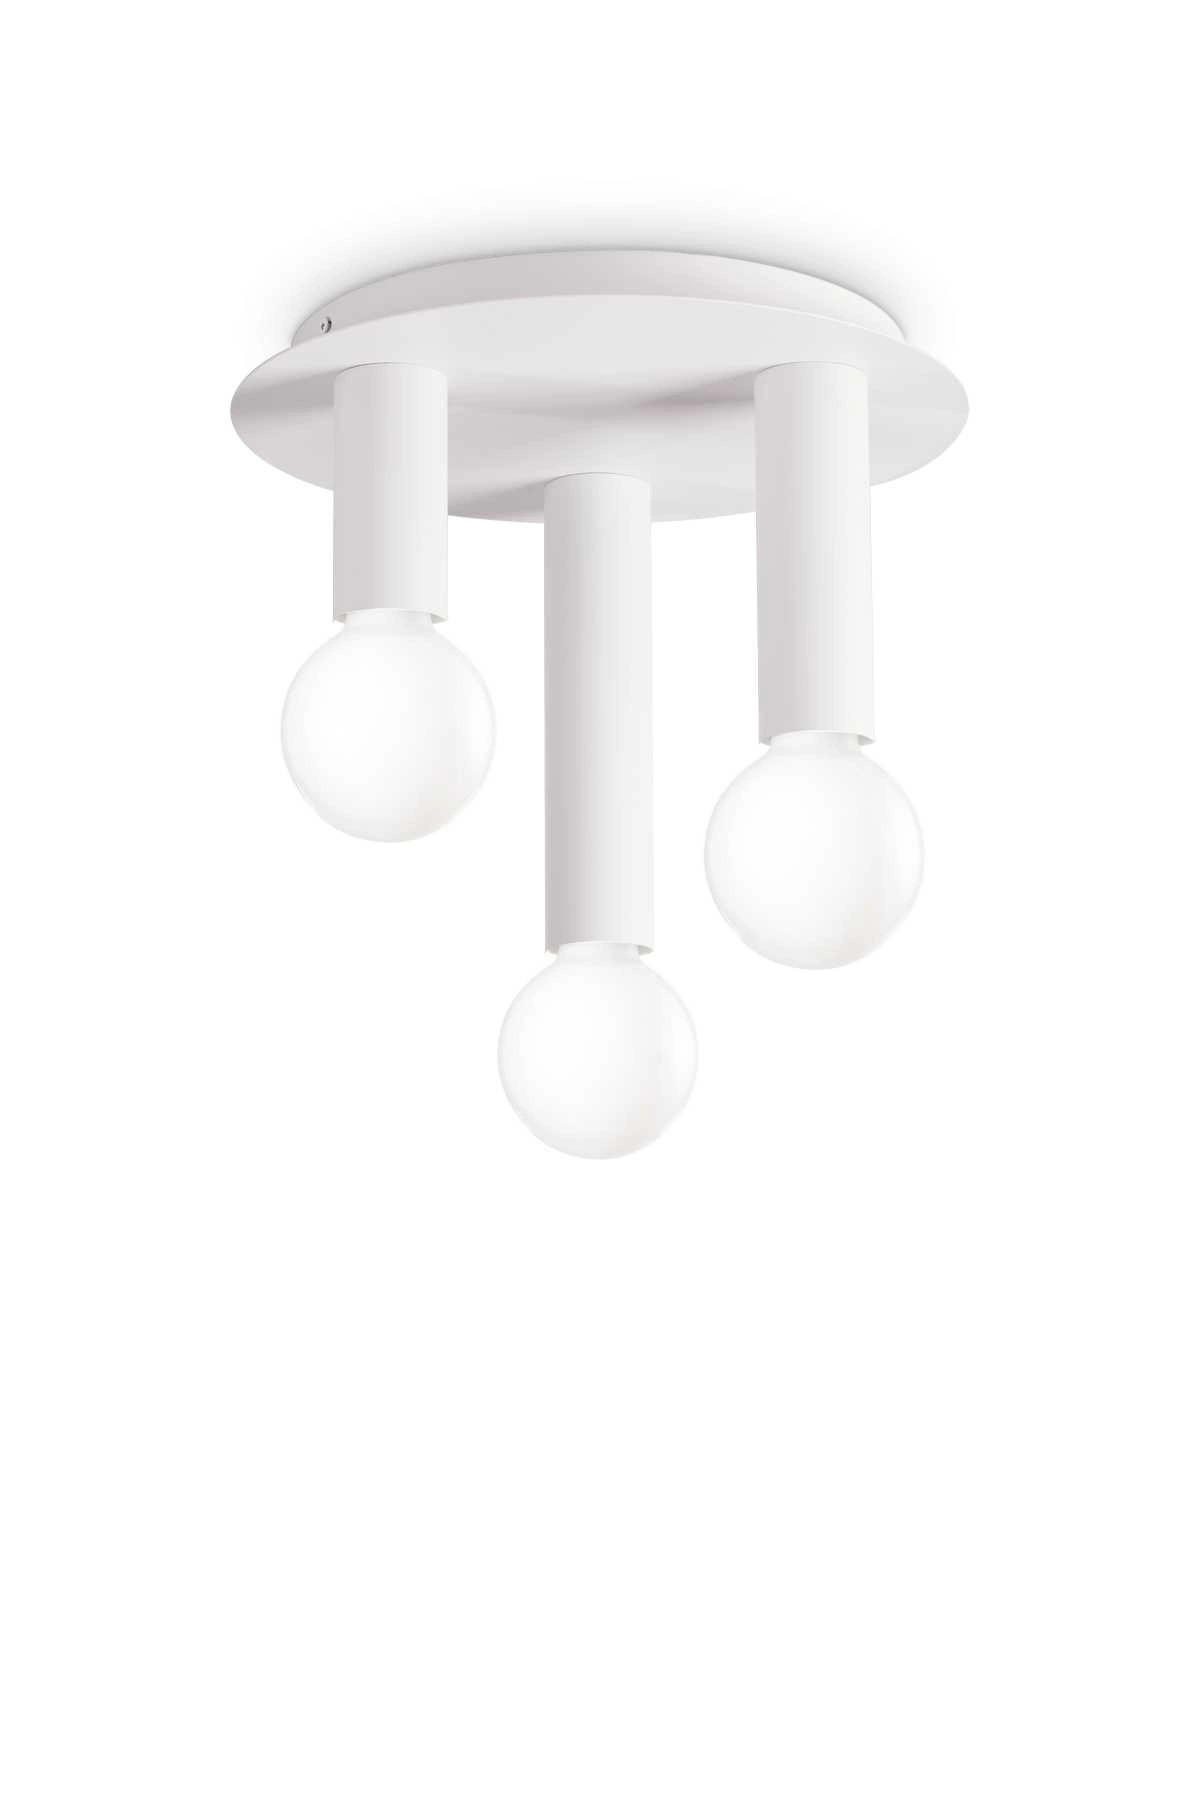   
                        
                        Світильник стельовий IDEAL LUX (Італія) 10880    
                         у стилі Хай-тек.  
                        Тип джерела світла: світлодіодна лампа, змінна.                         Форма: Коло.                                                                          фото 1